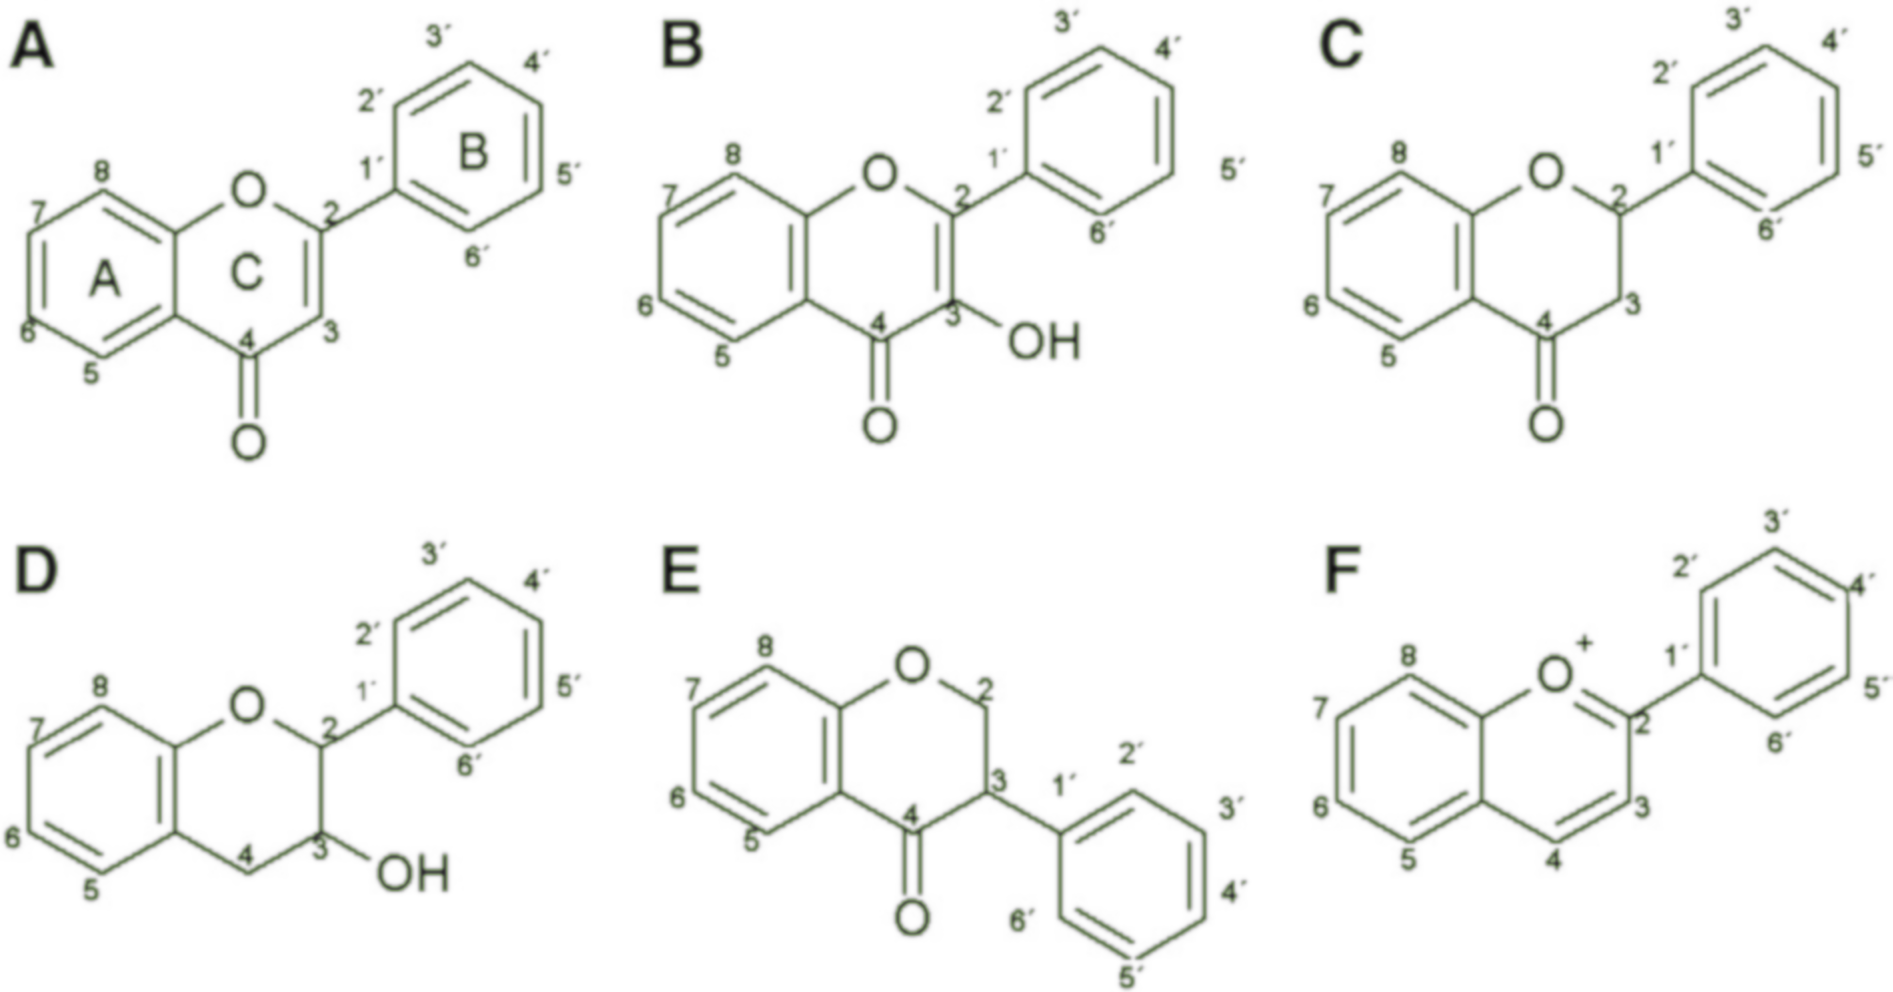 Onderverdeling van flavonoïden op basis van de chemische formule